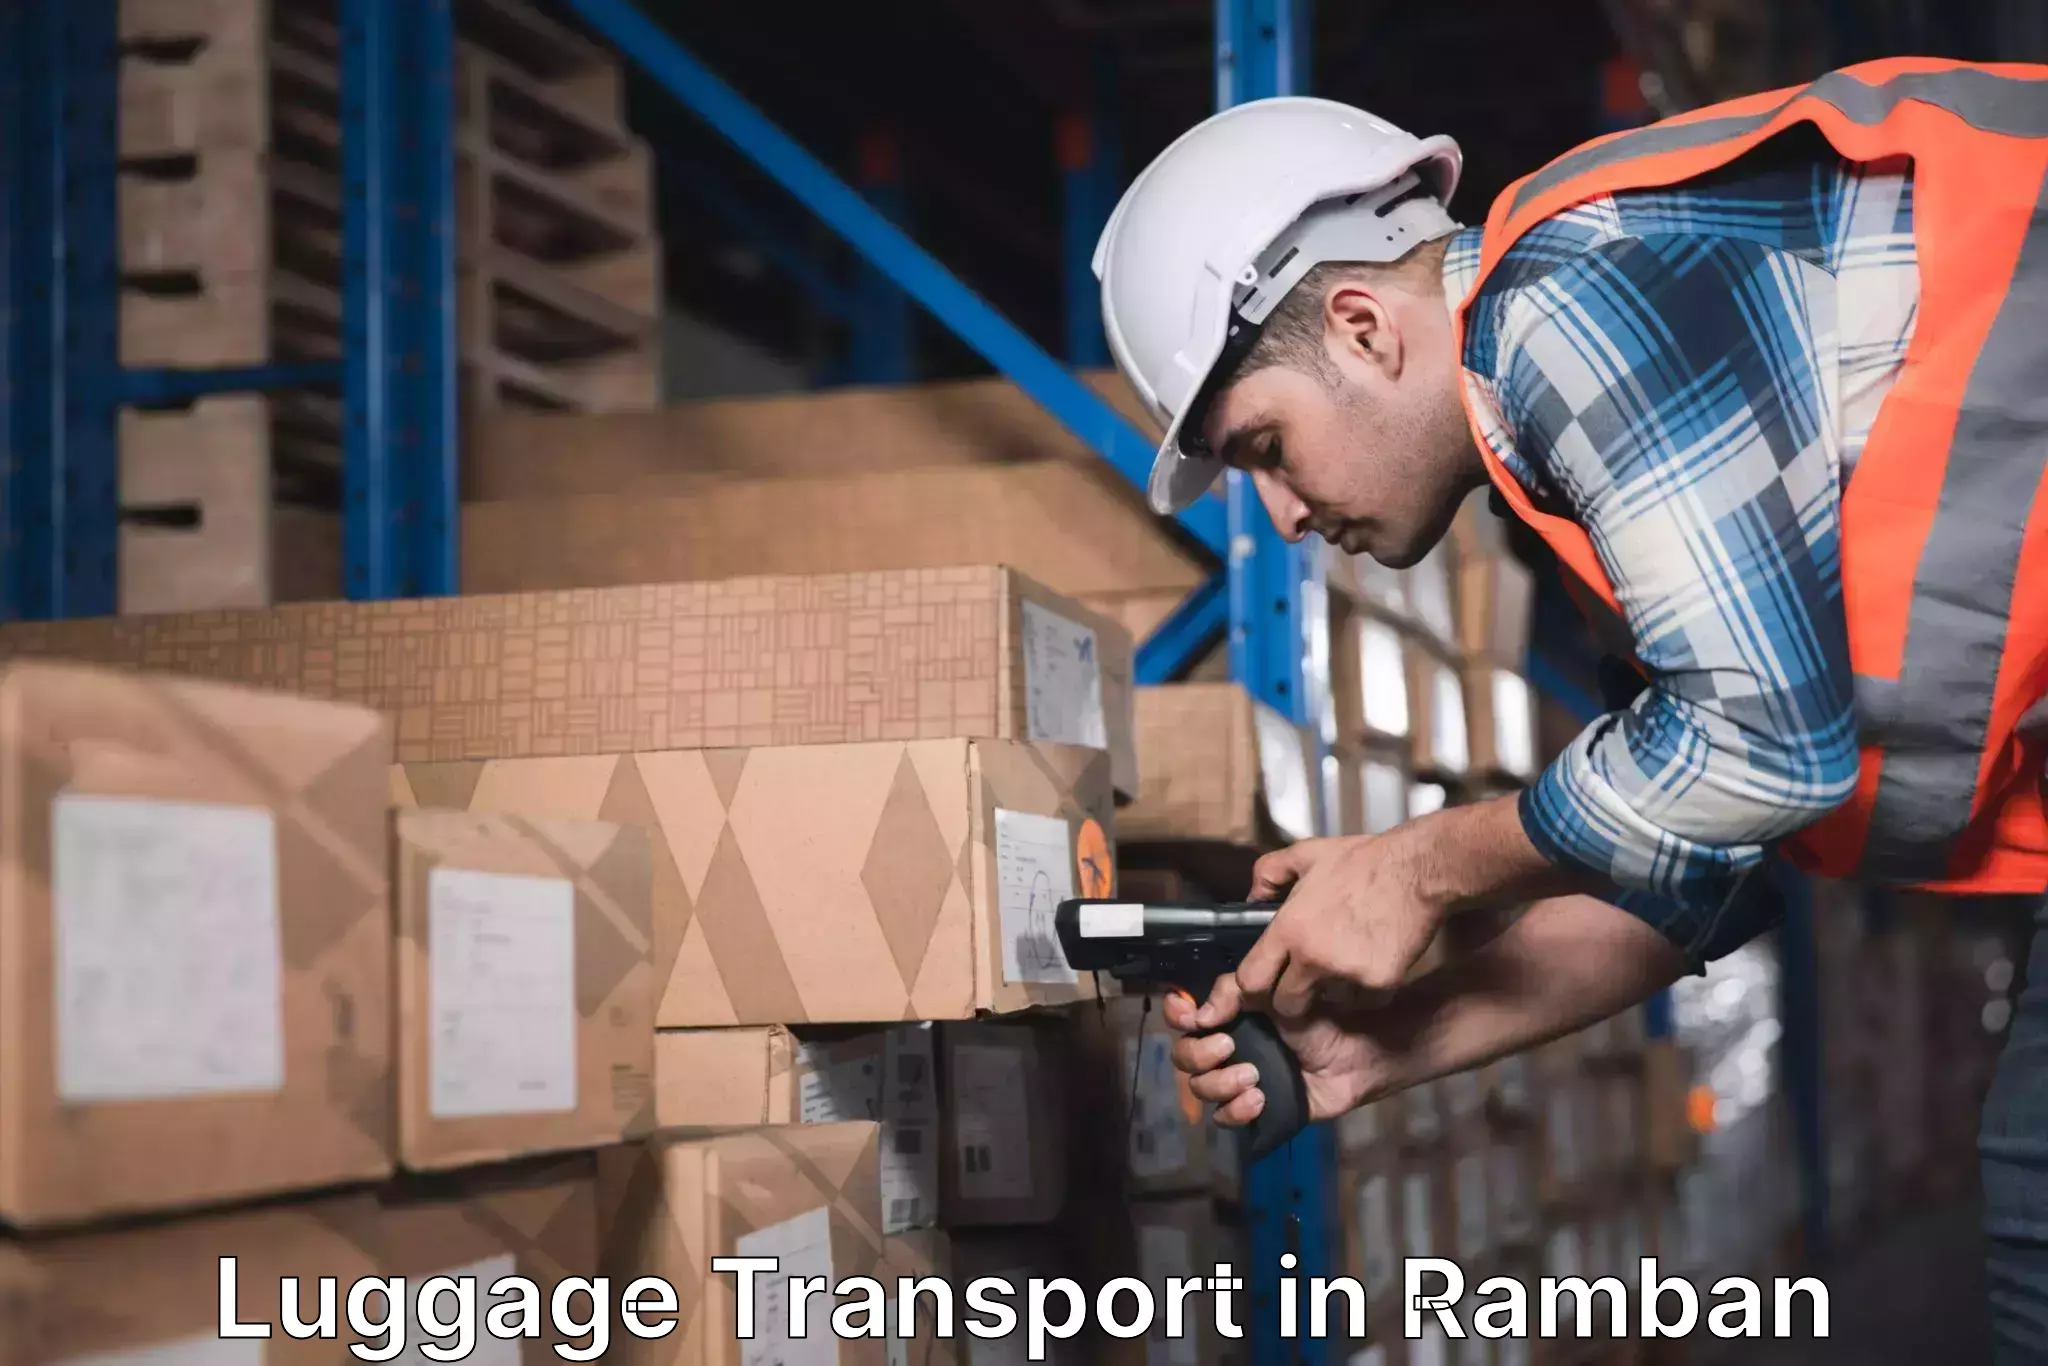 Luggage shipping rates in Ramban